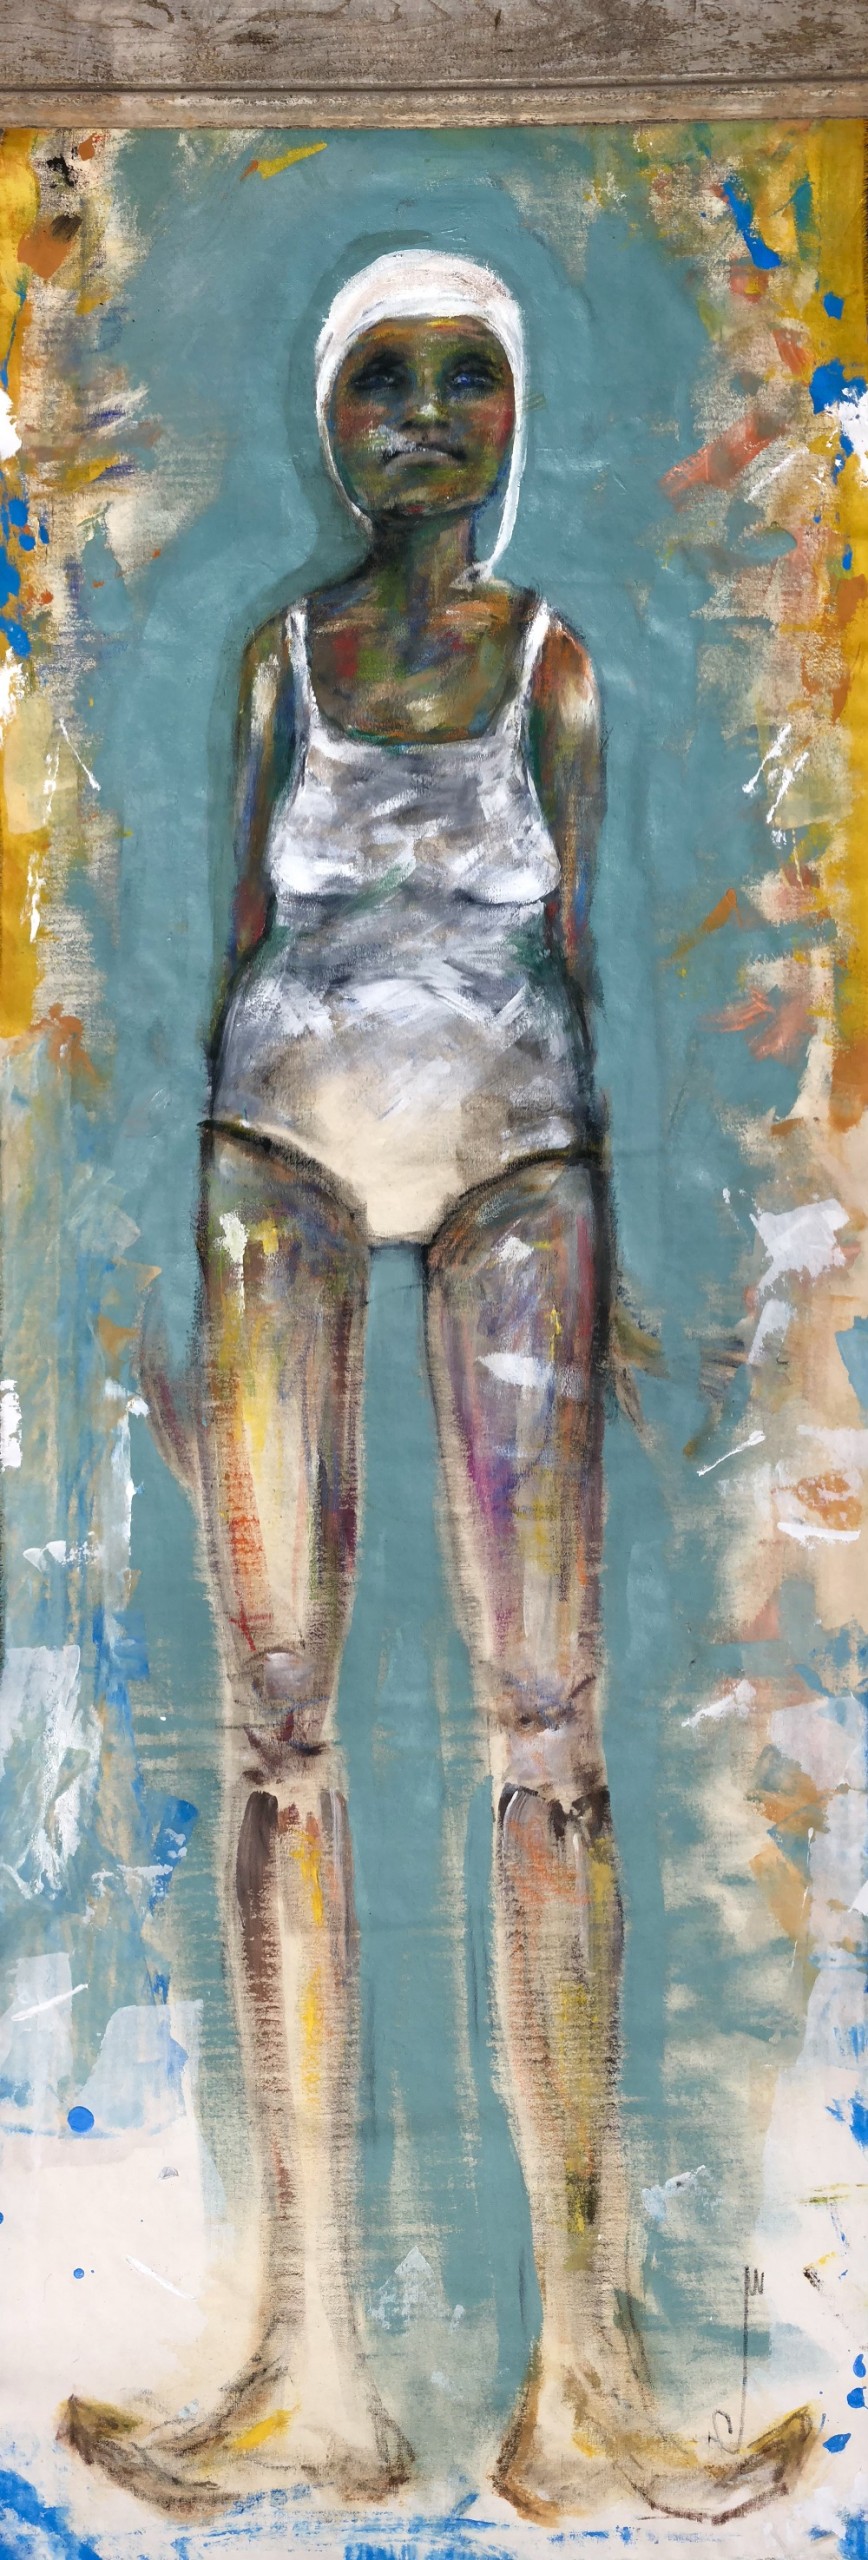 Jocelyn K Woodson, “Female Swimmer”, Acrylic on canvas